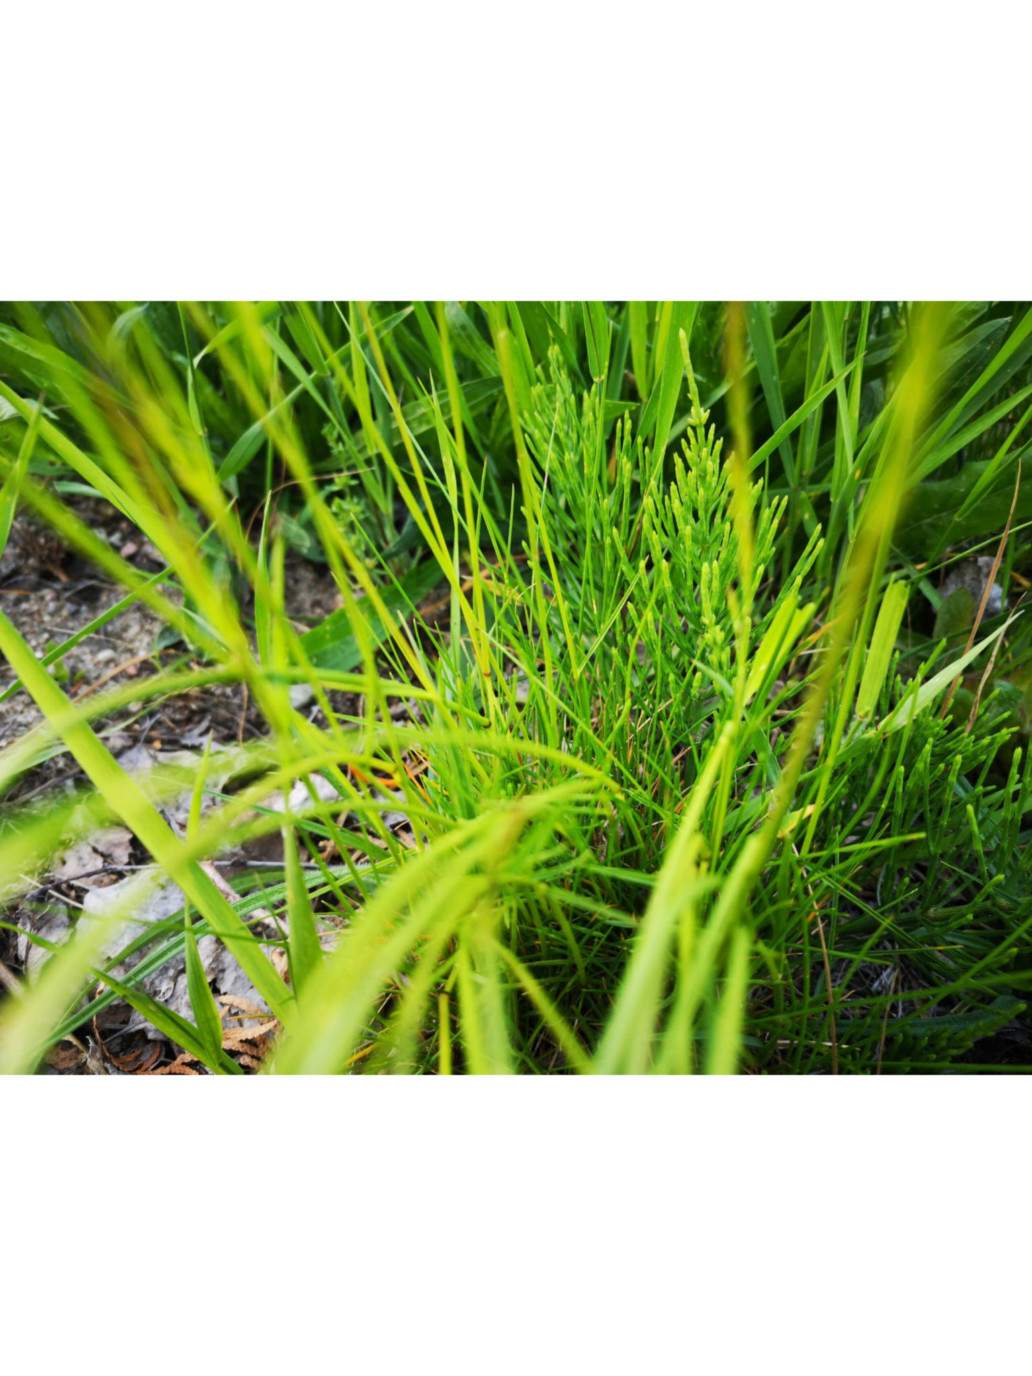 Skrzyp polny – „chwast” który świetnie wpływa na naszą urodę